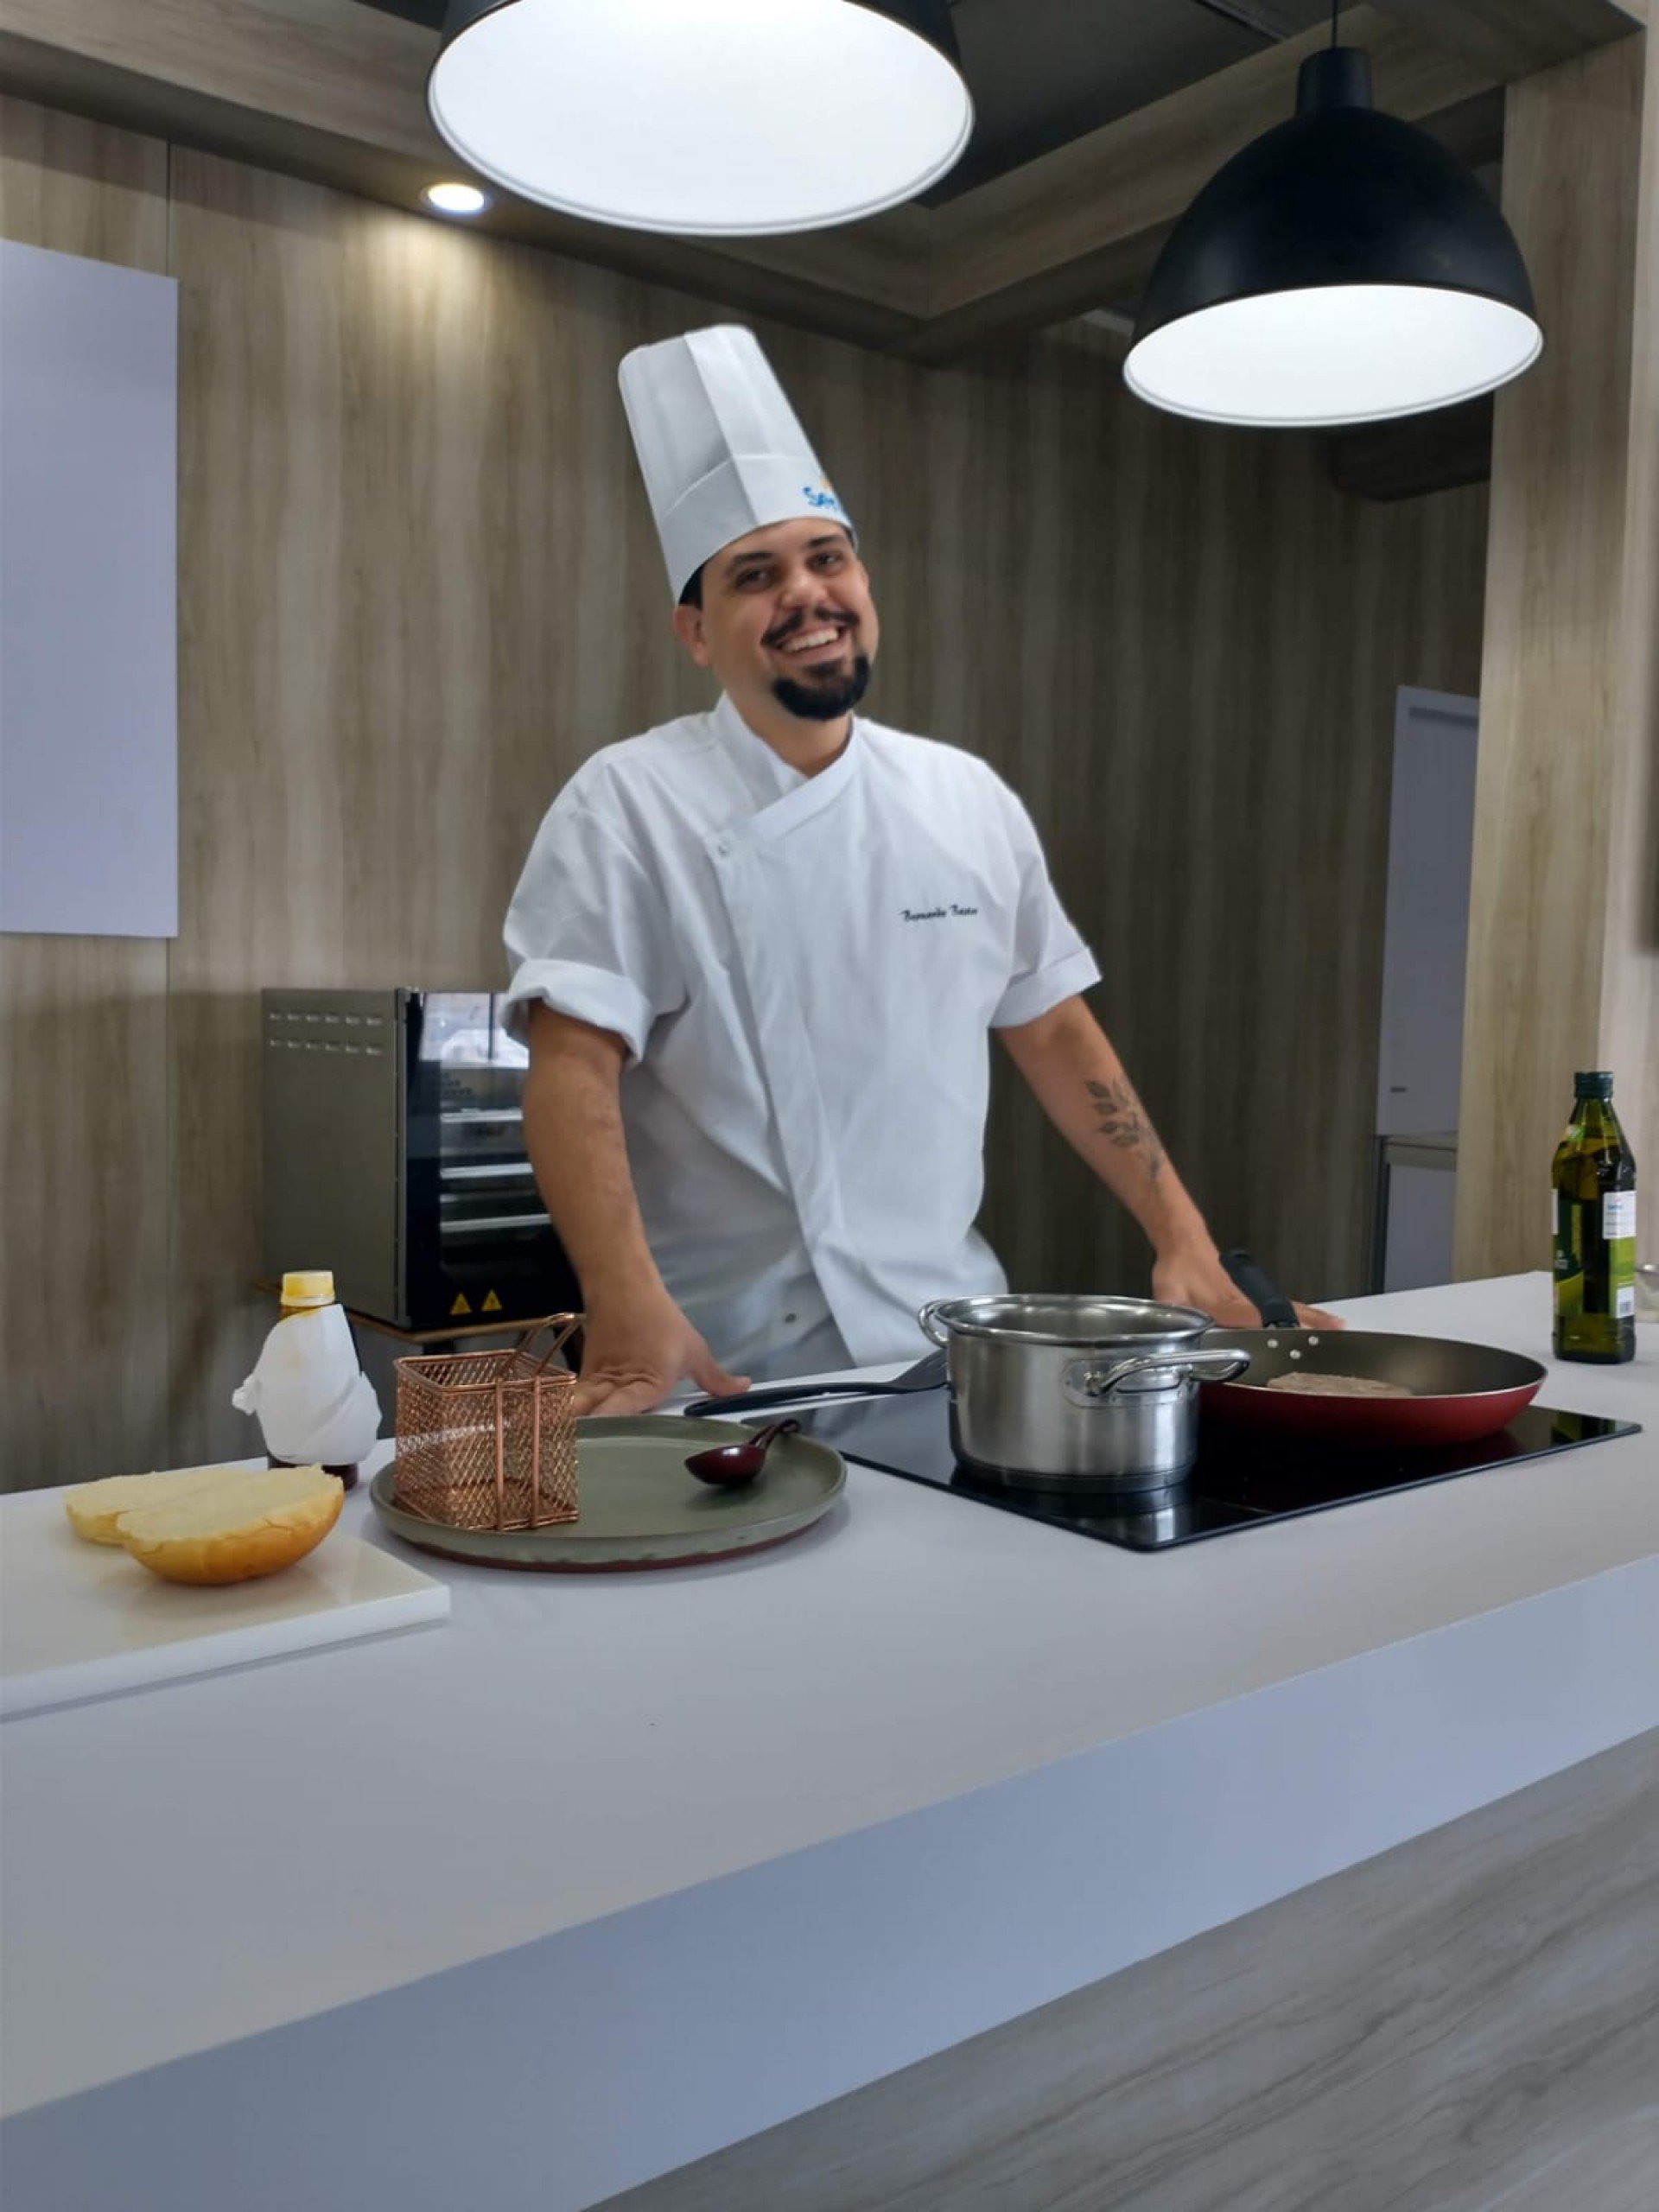 Cozinha Show com chefs renomados. - Divulgação/Senac